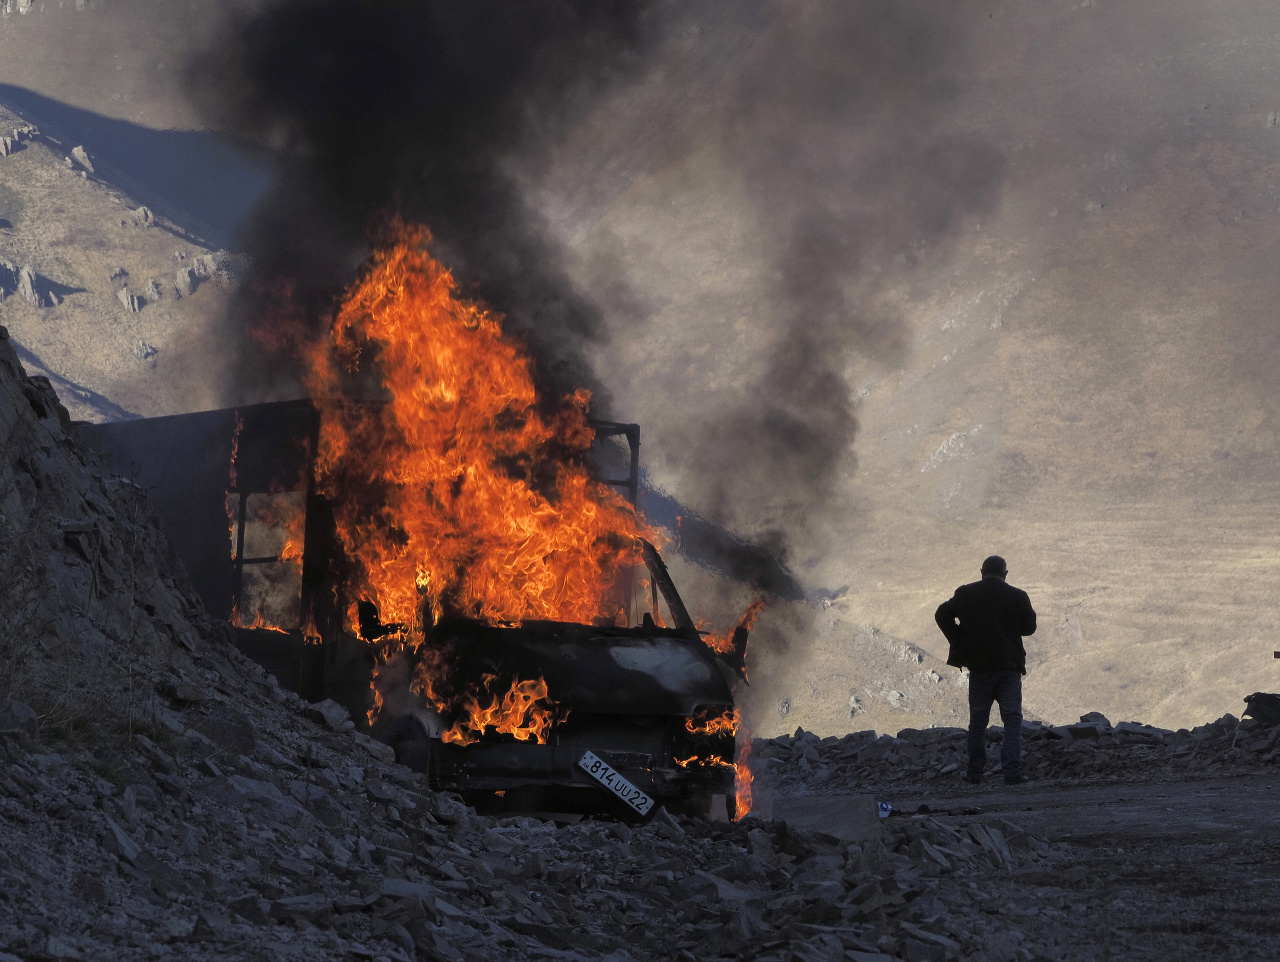 Na snímke muž stojí pri horiacom aute vedľa cesty vedúcej na horský priechod neďaleko hranice medzi Náhorným Karabachom a Arménskom počas bojov medzi arménskymi a azerbajdžanskými vojenskými jednotkami v samozvanom regióne Náhorný Karabach 8. novembra 202